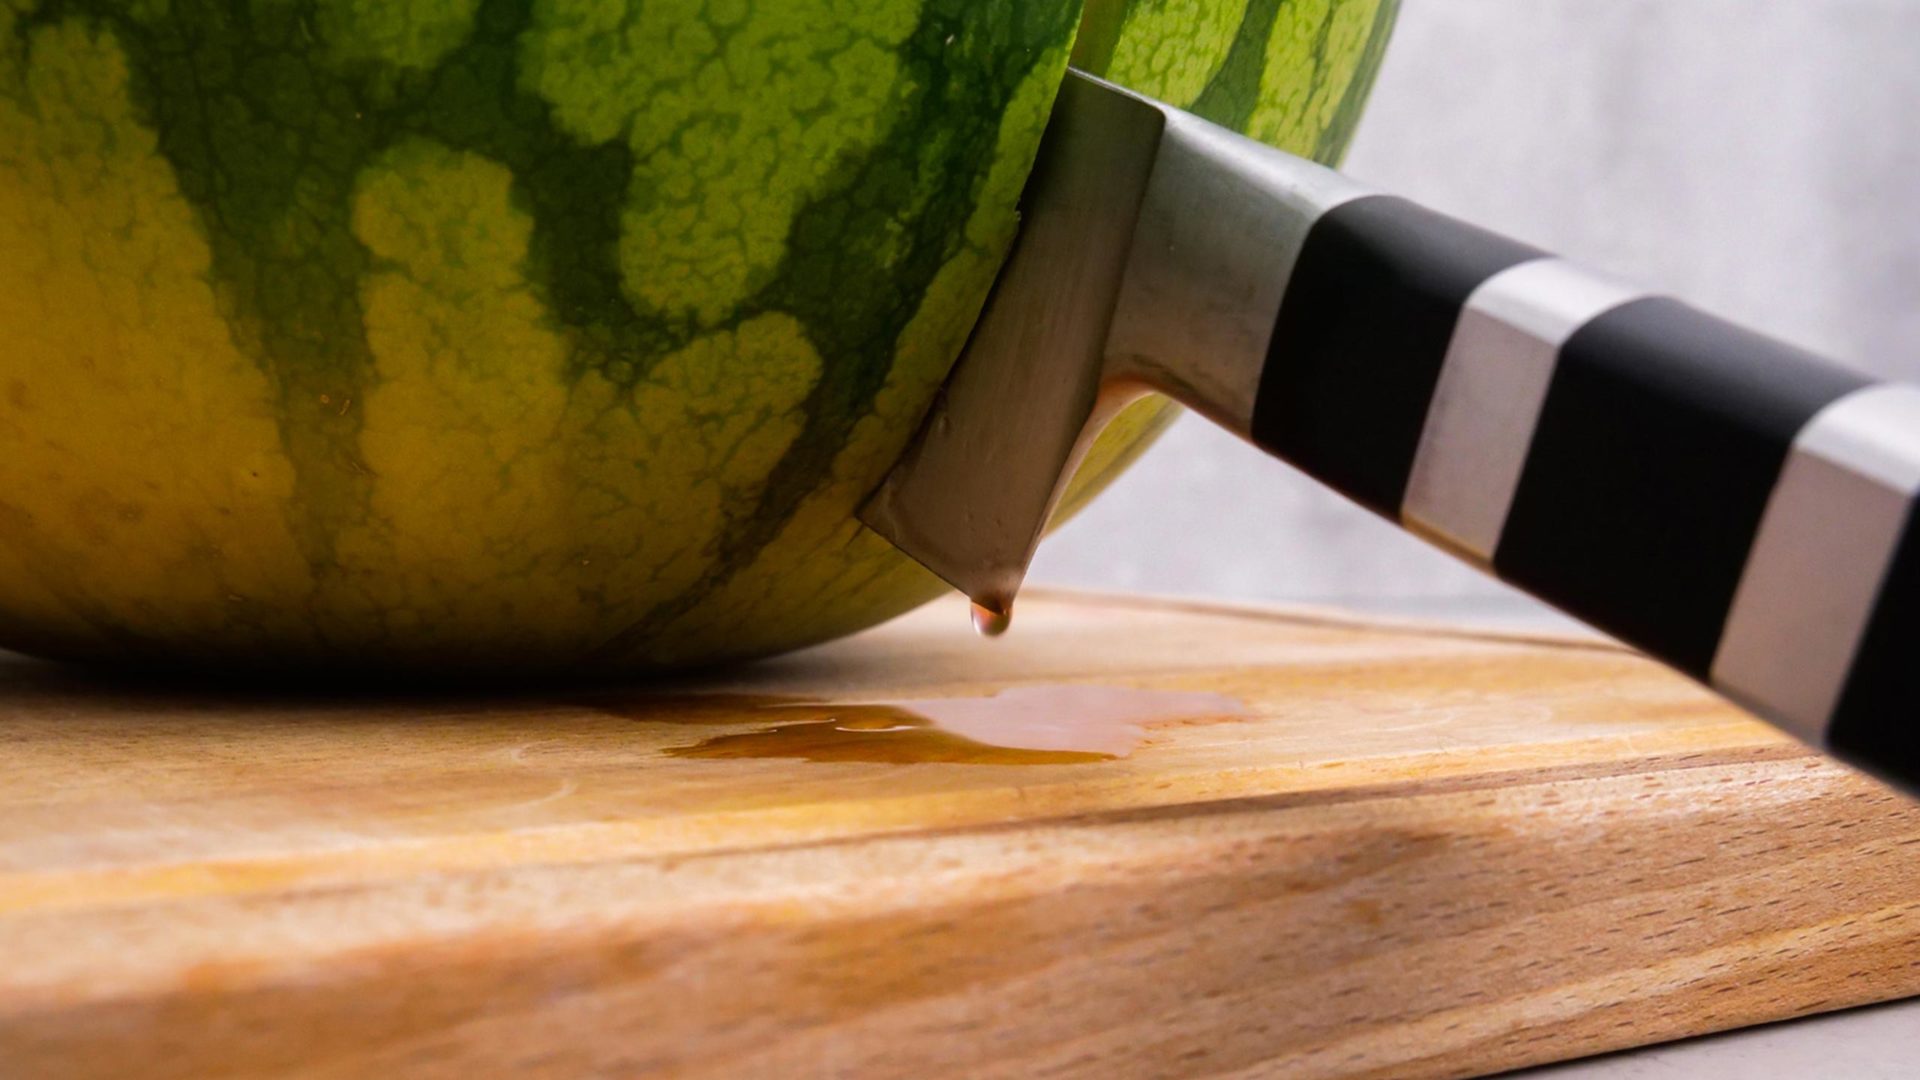 Knife stuck in watermelon